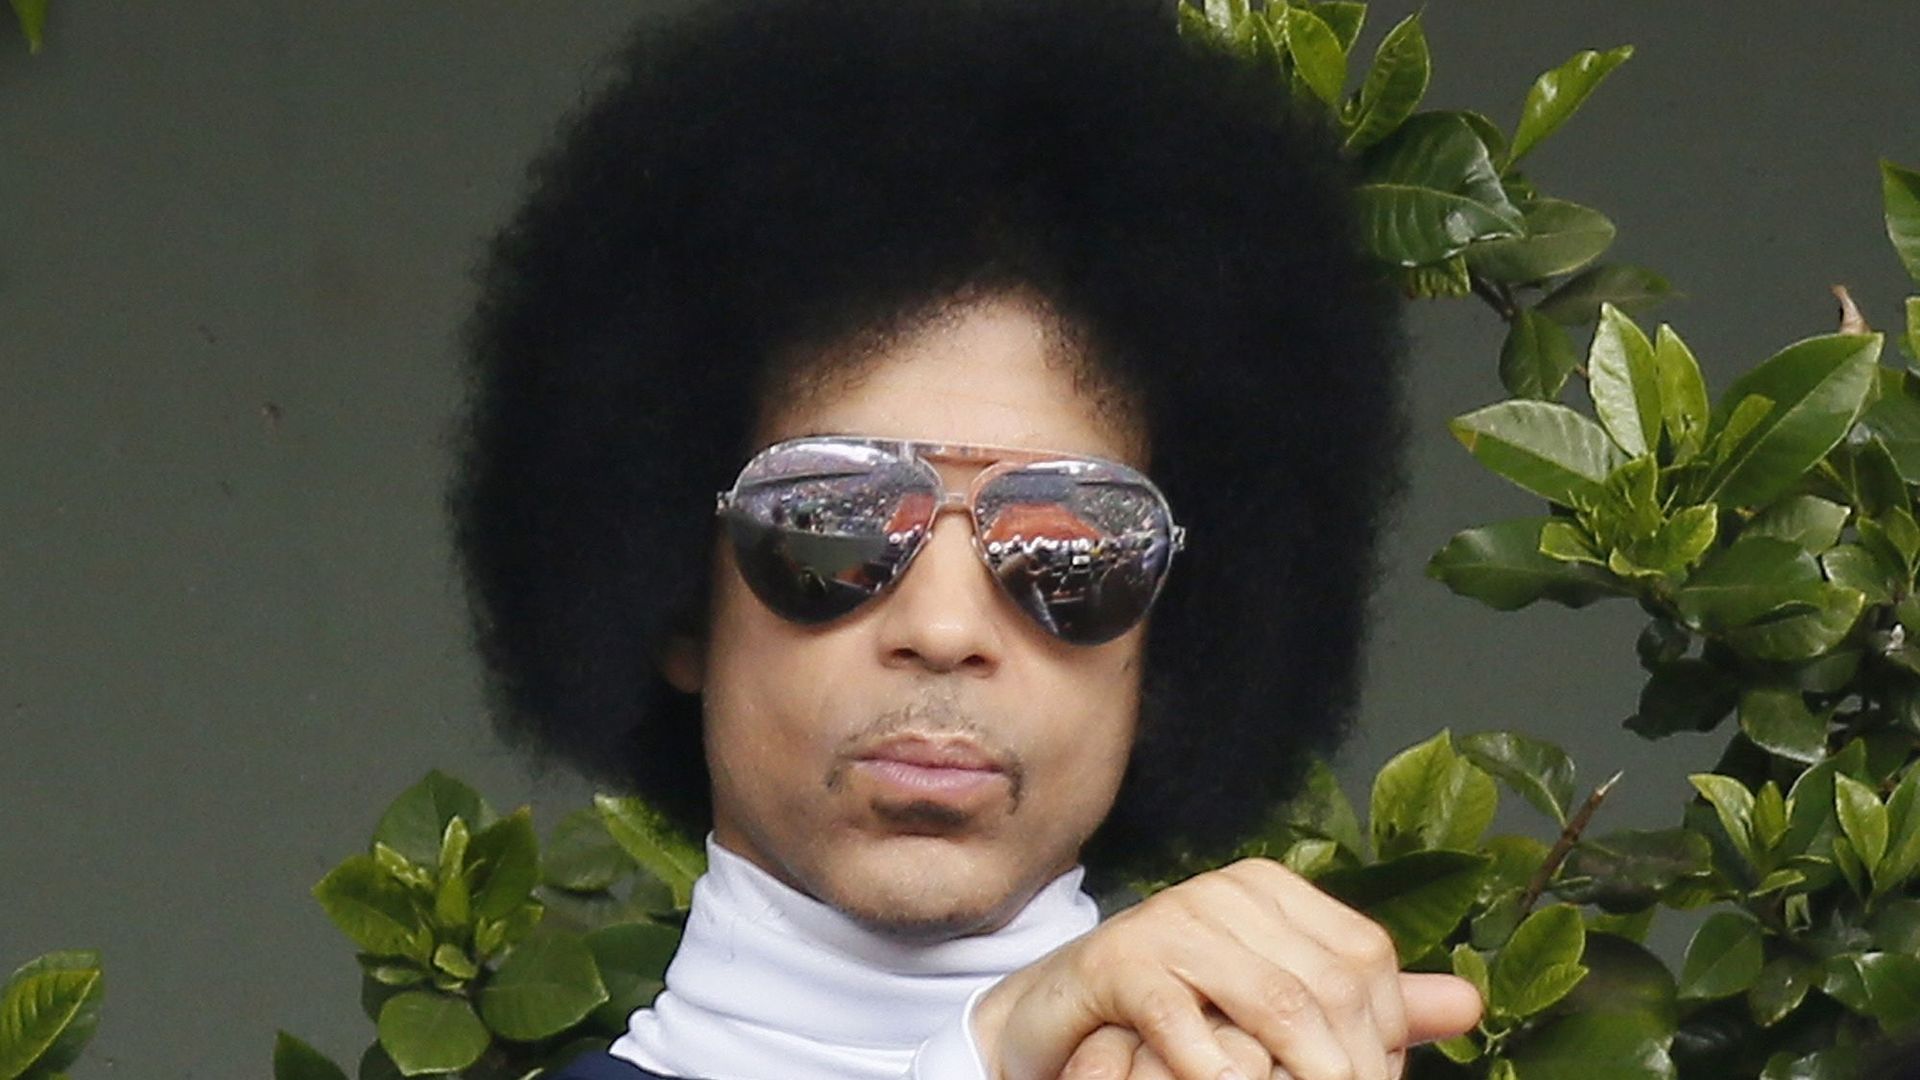 Face aux revendeurs rapaces, Prince reporte la vente de billets pour des dates européennes